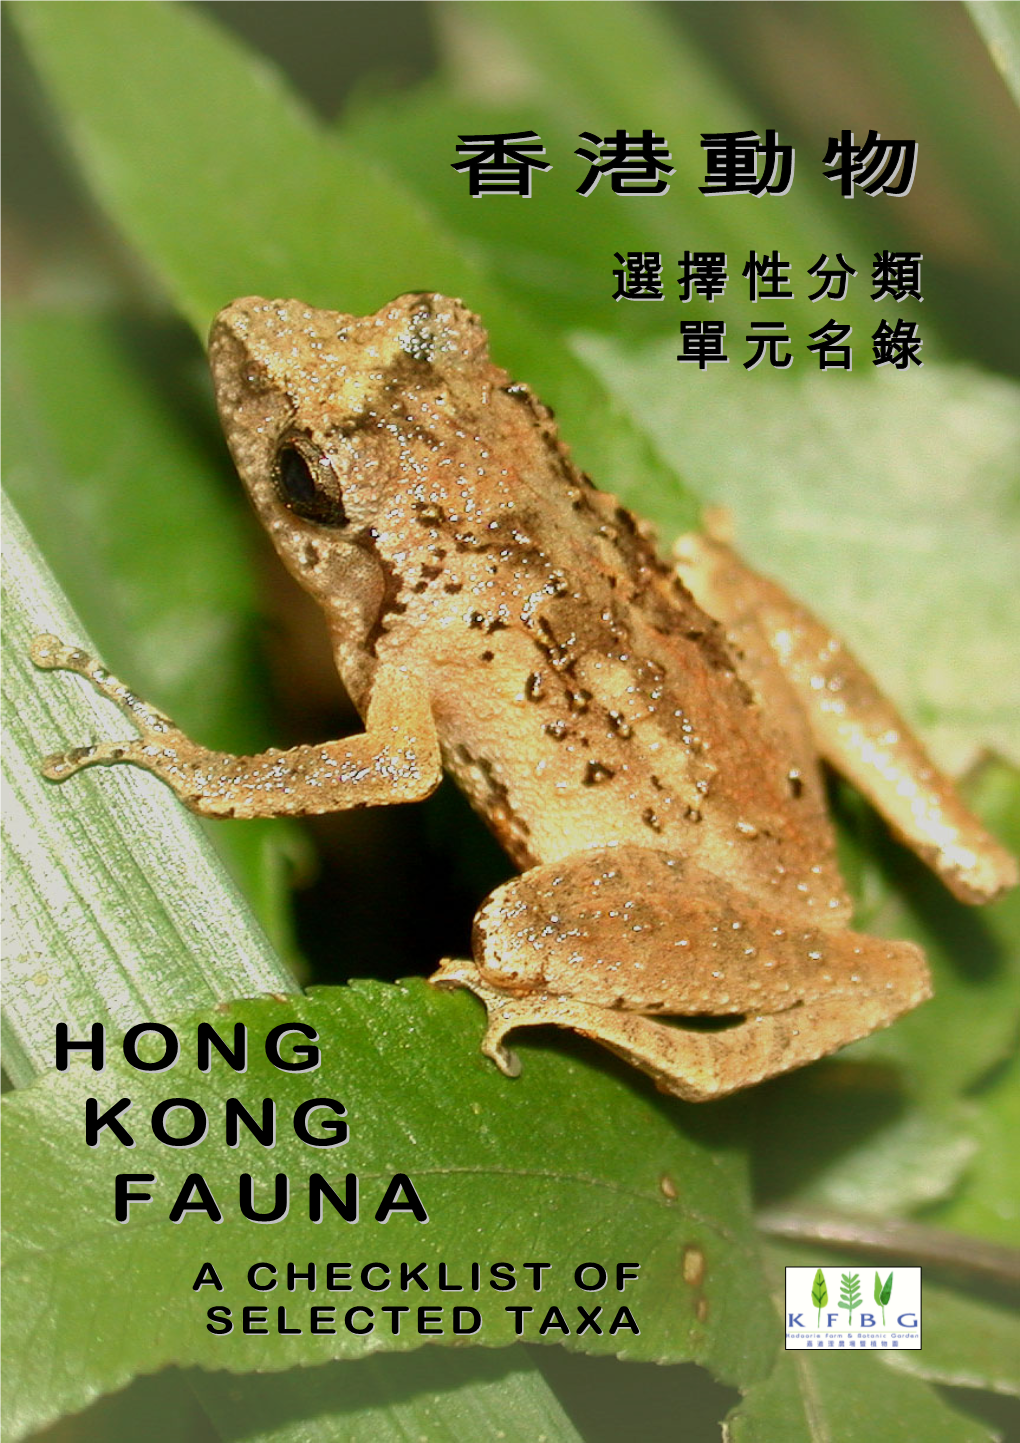 Hong Kong Fauna Checklist CONTENTS